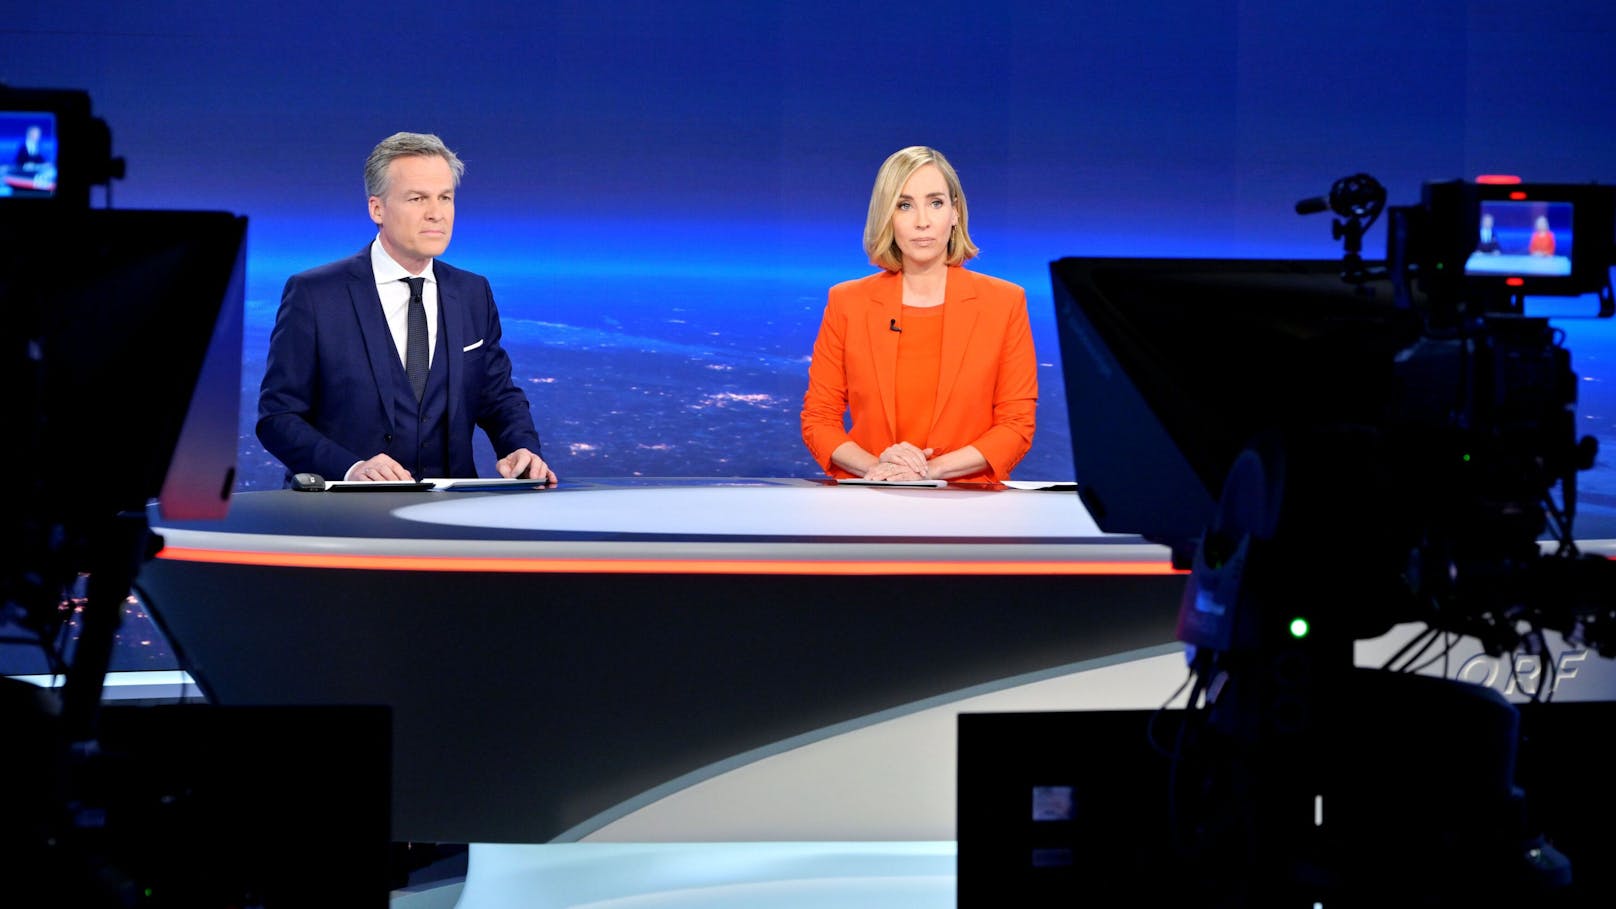 "Ärgert mich" – ORF-Star lässt bei Interview aufhorchen